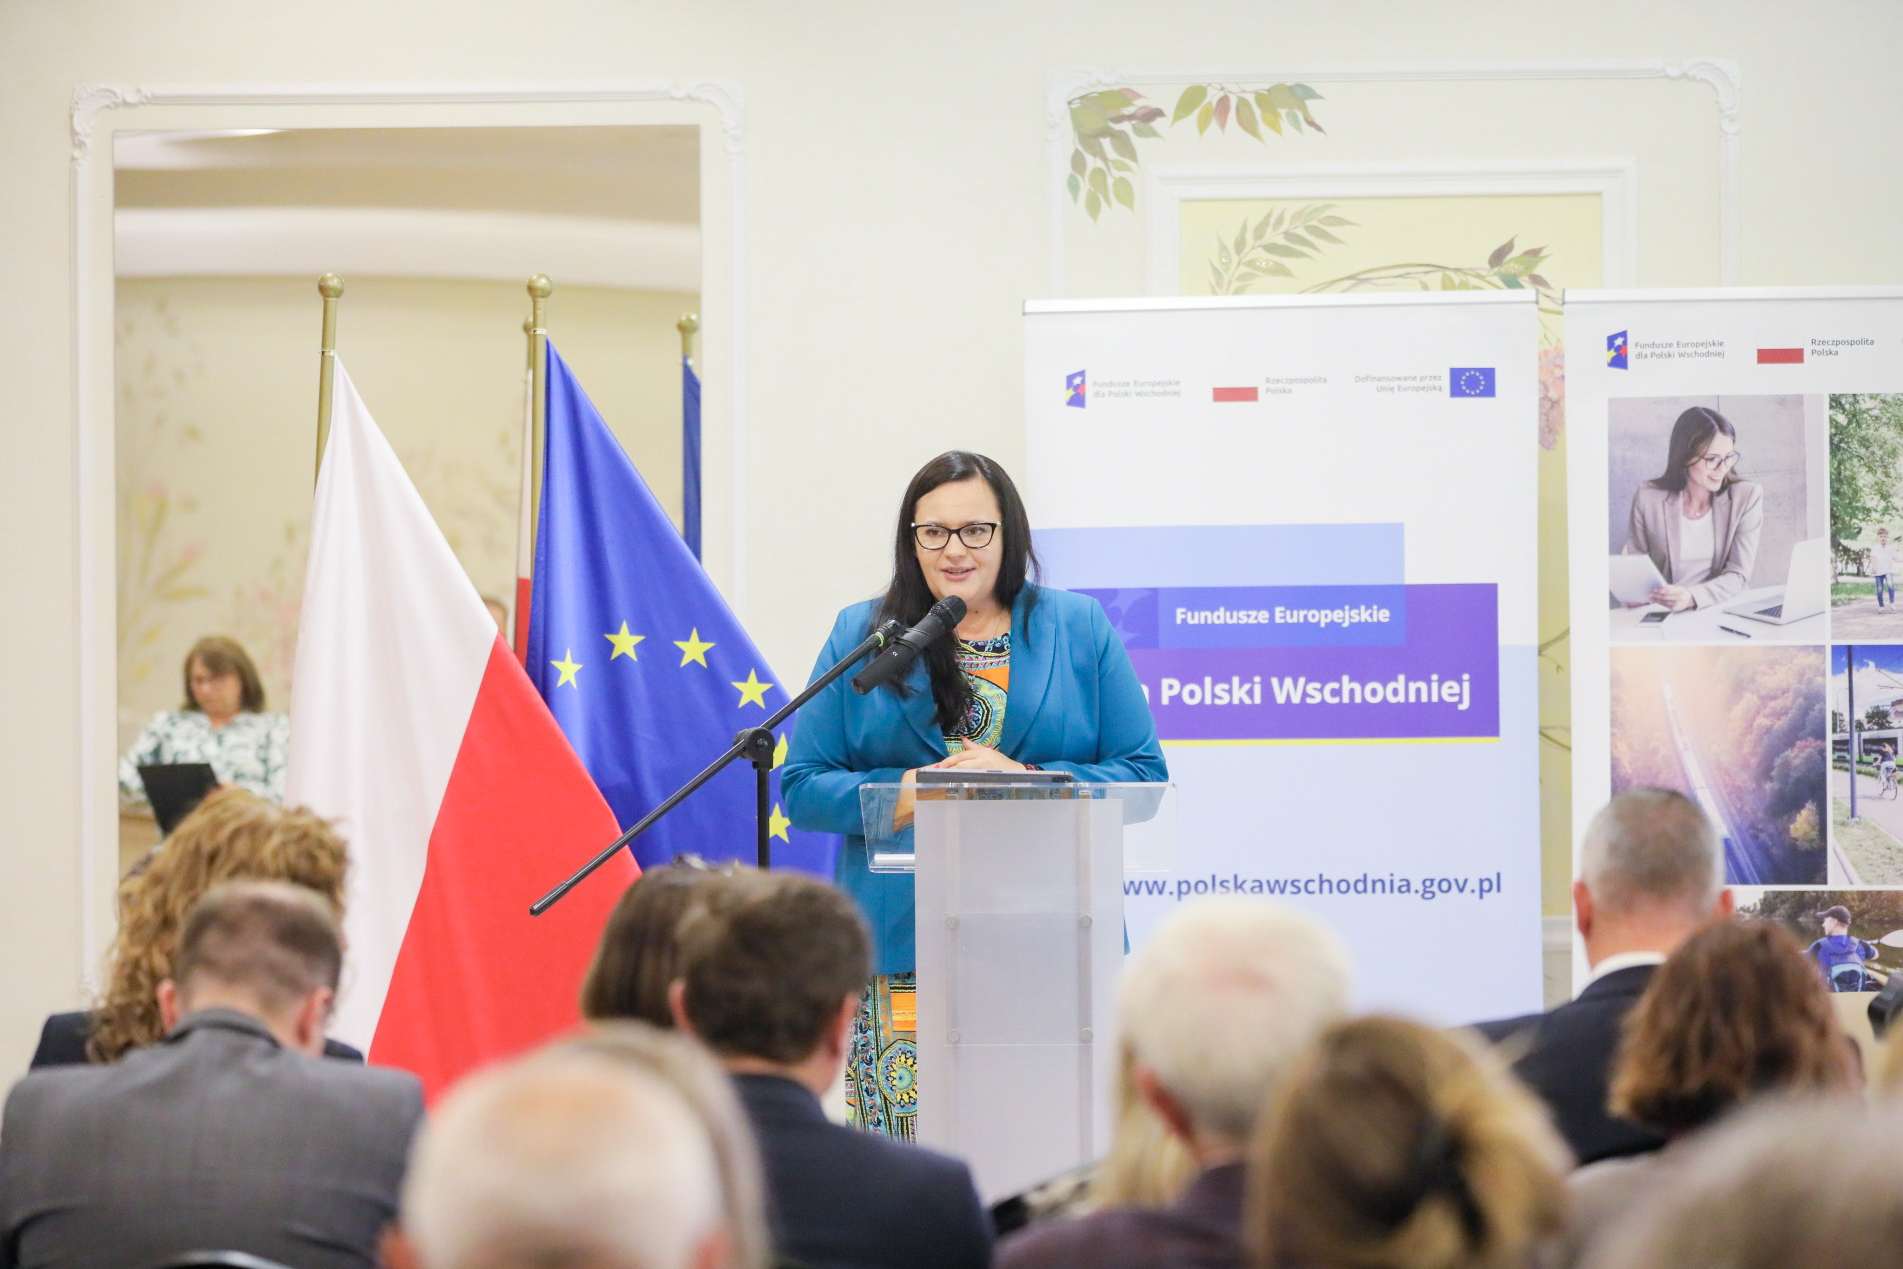 Warsztaty regionalne dla beneficjentów programu Fundusze Europejskie dla Polski Wschodniej 2021-2027 w Radomiu